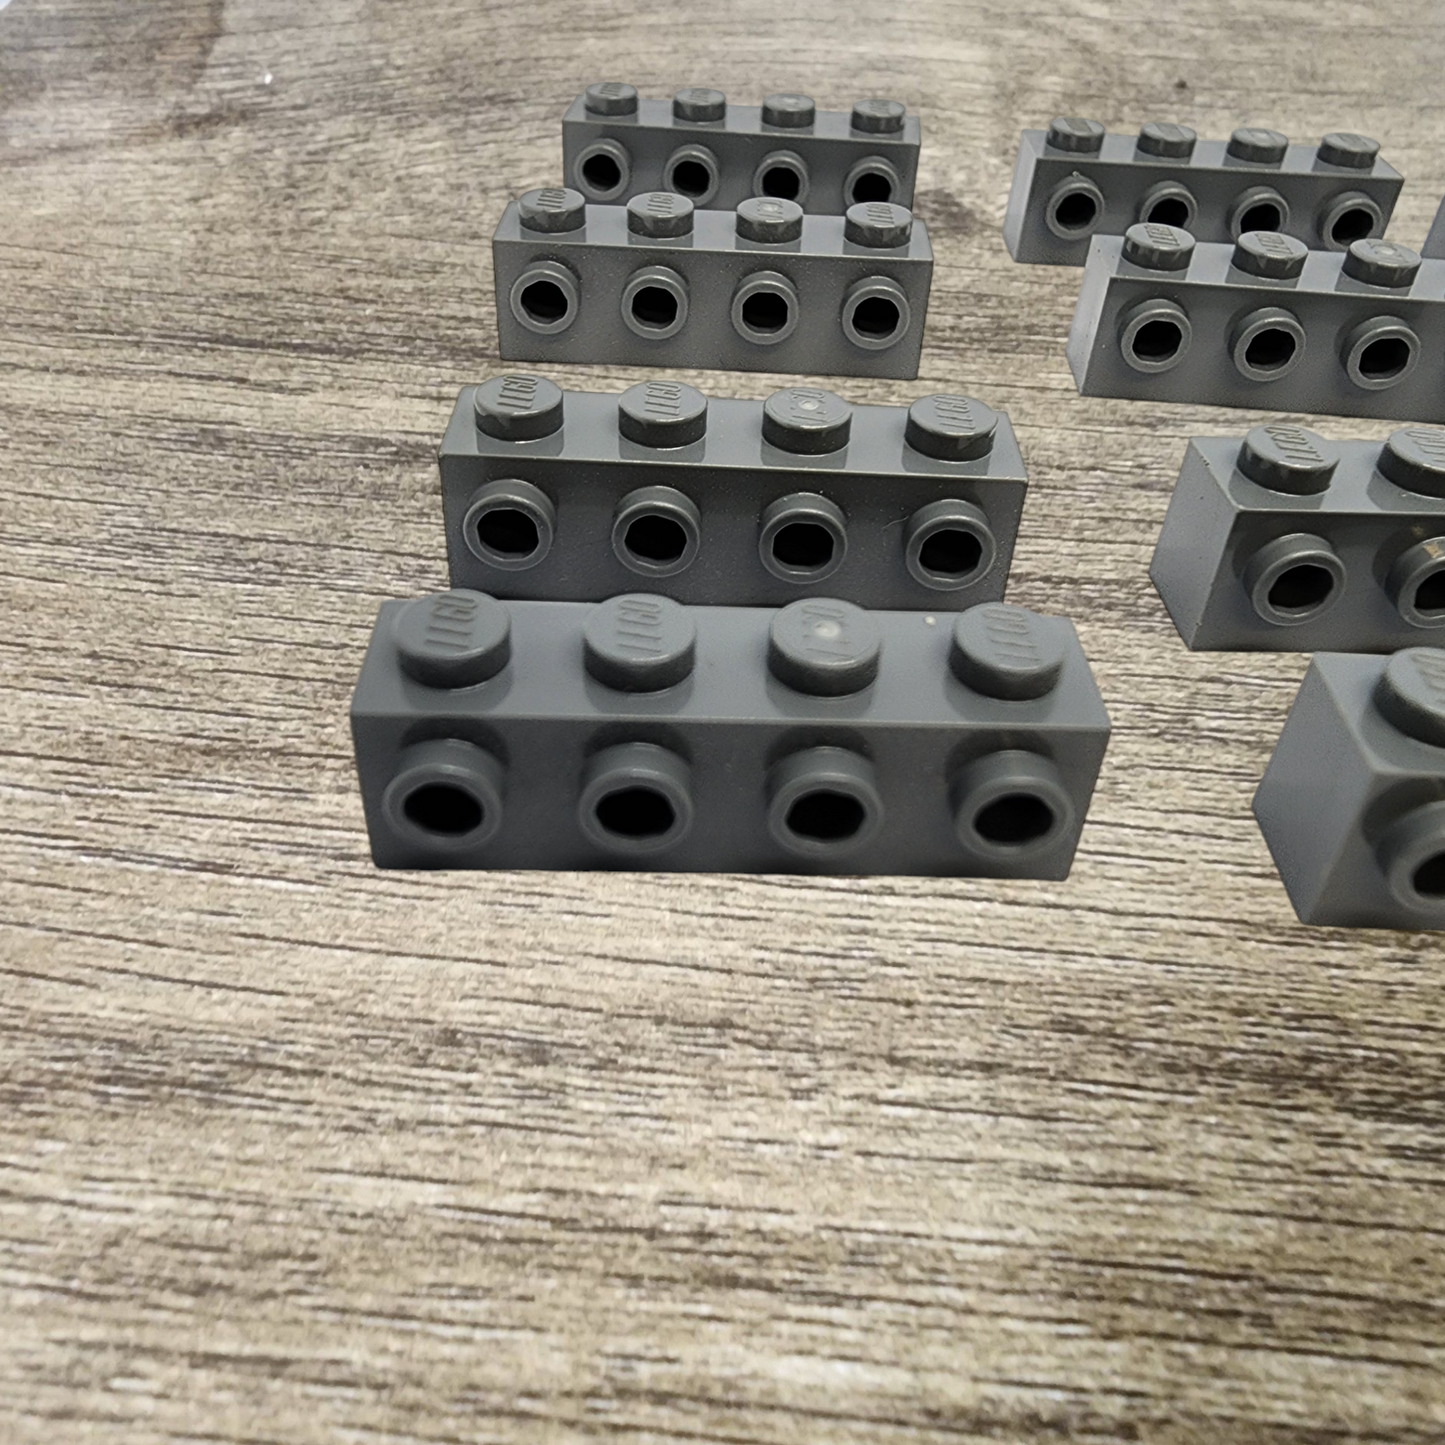 12x Lego Modified Brick 1x4 with Studs on side 30414 Dark Bluish Gray